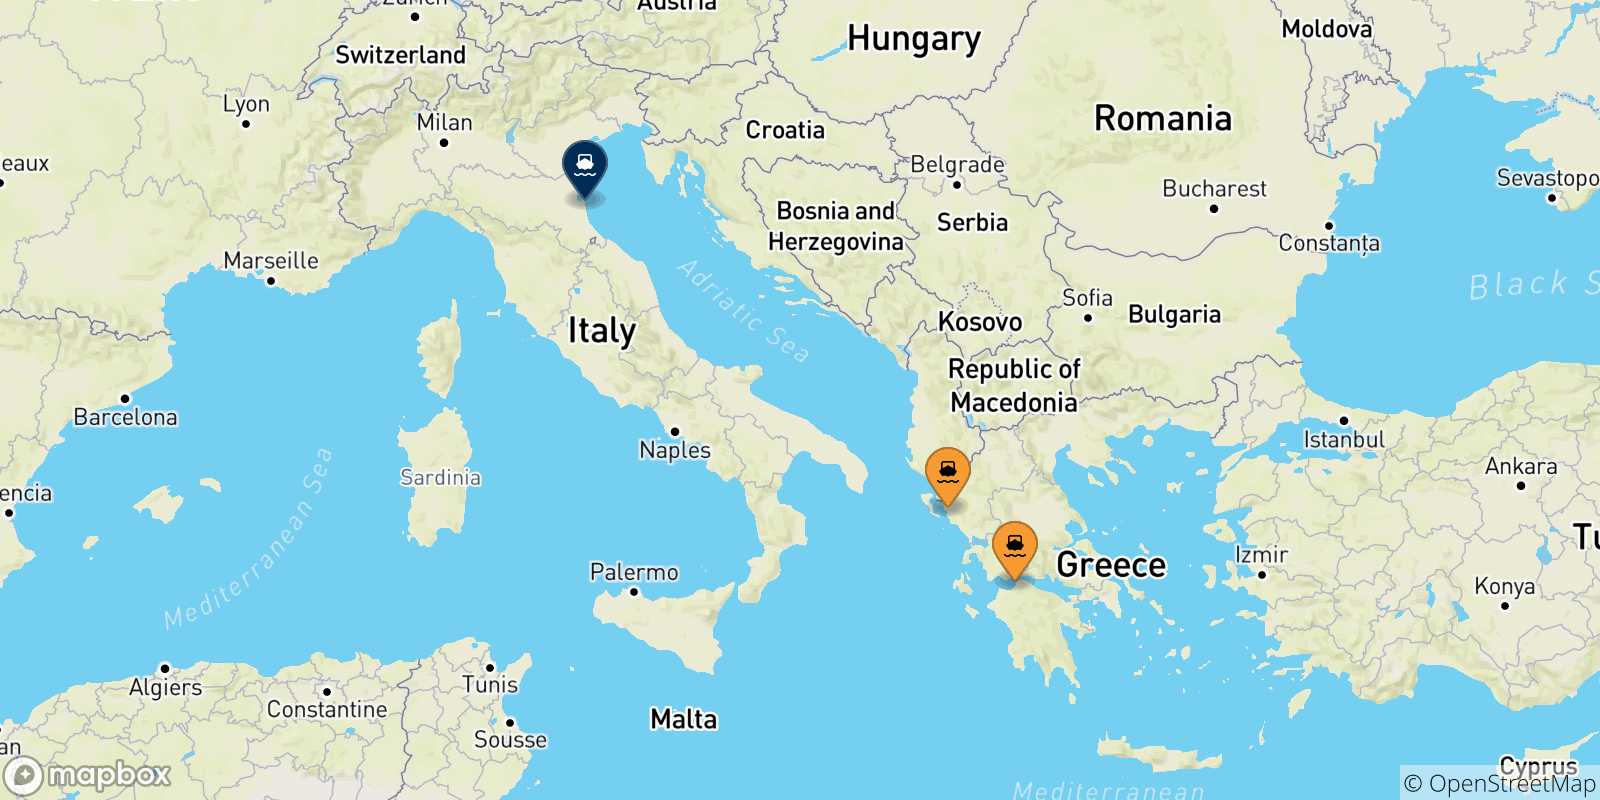 Mappa delle possibili rotte tra la Grecia e Ravenna